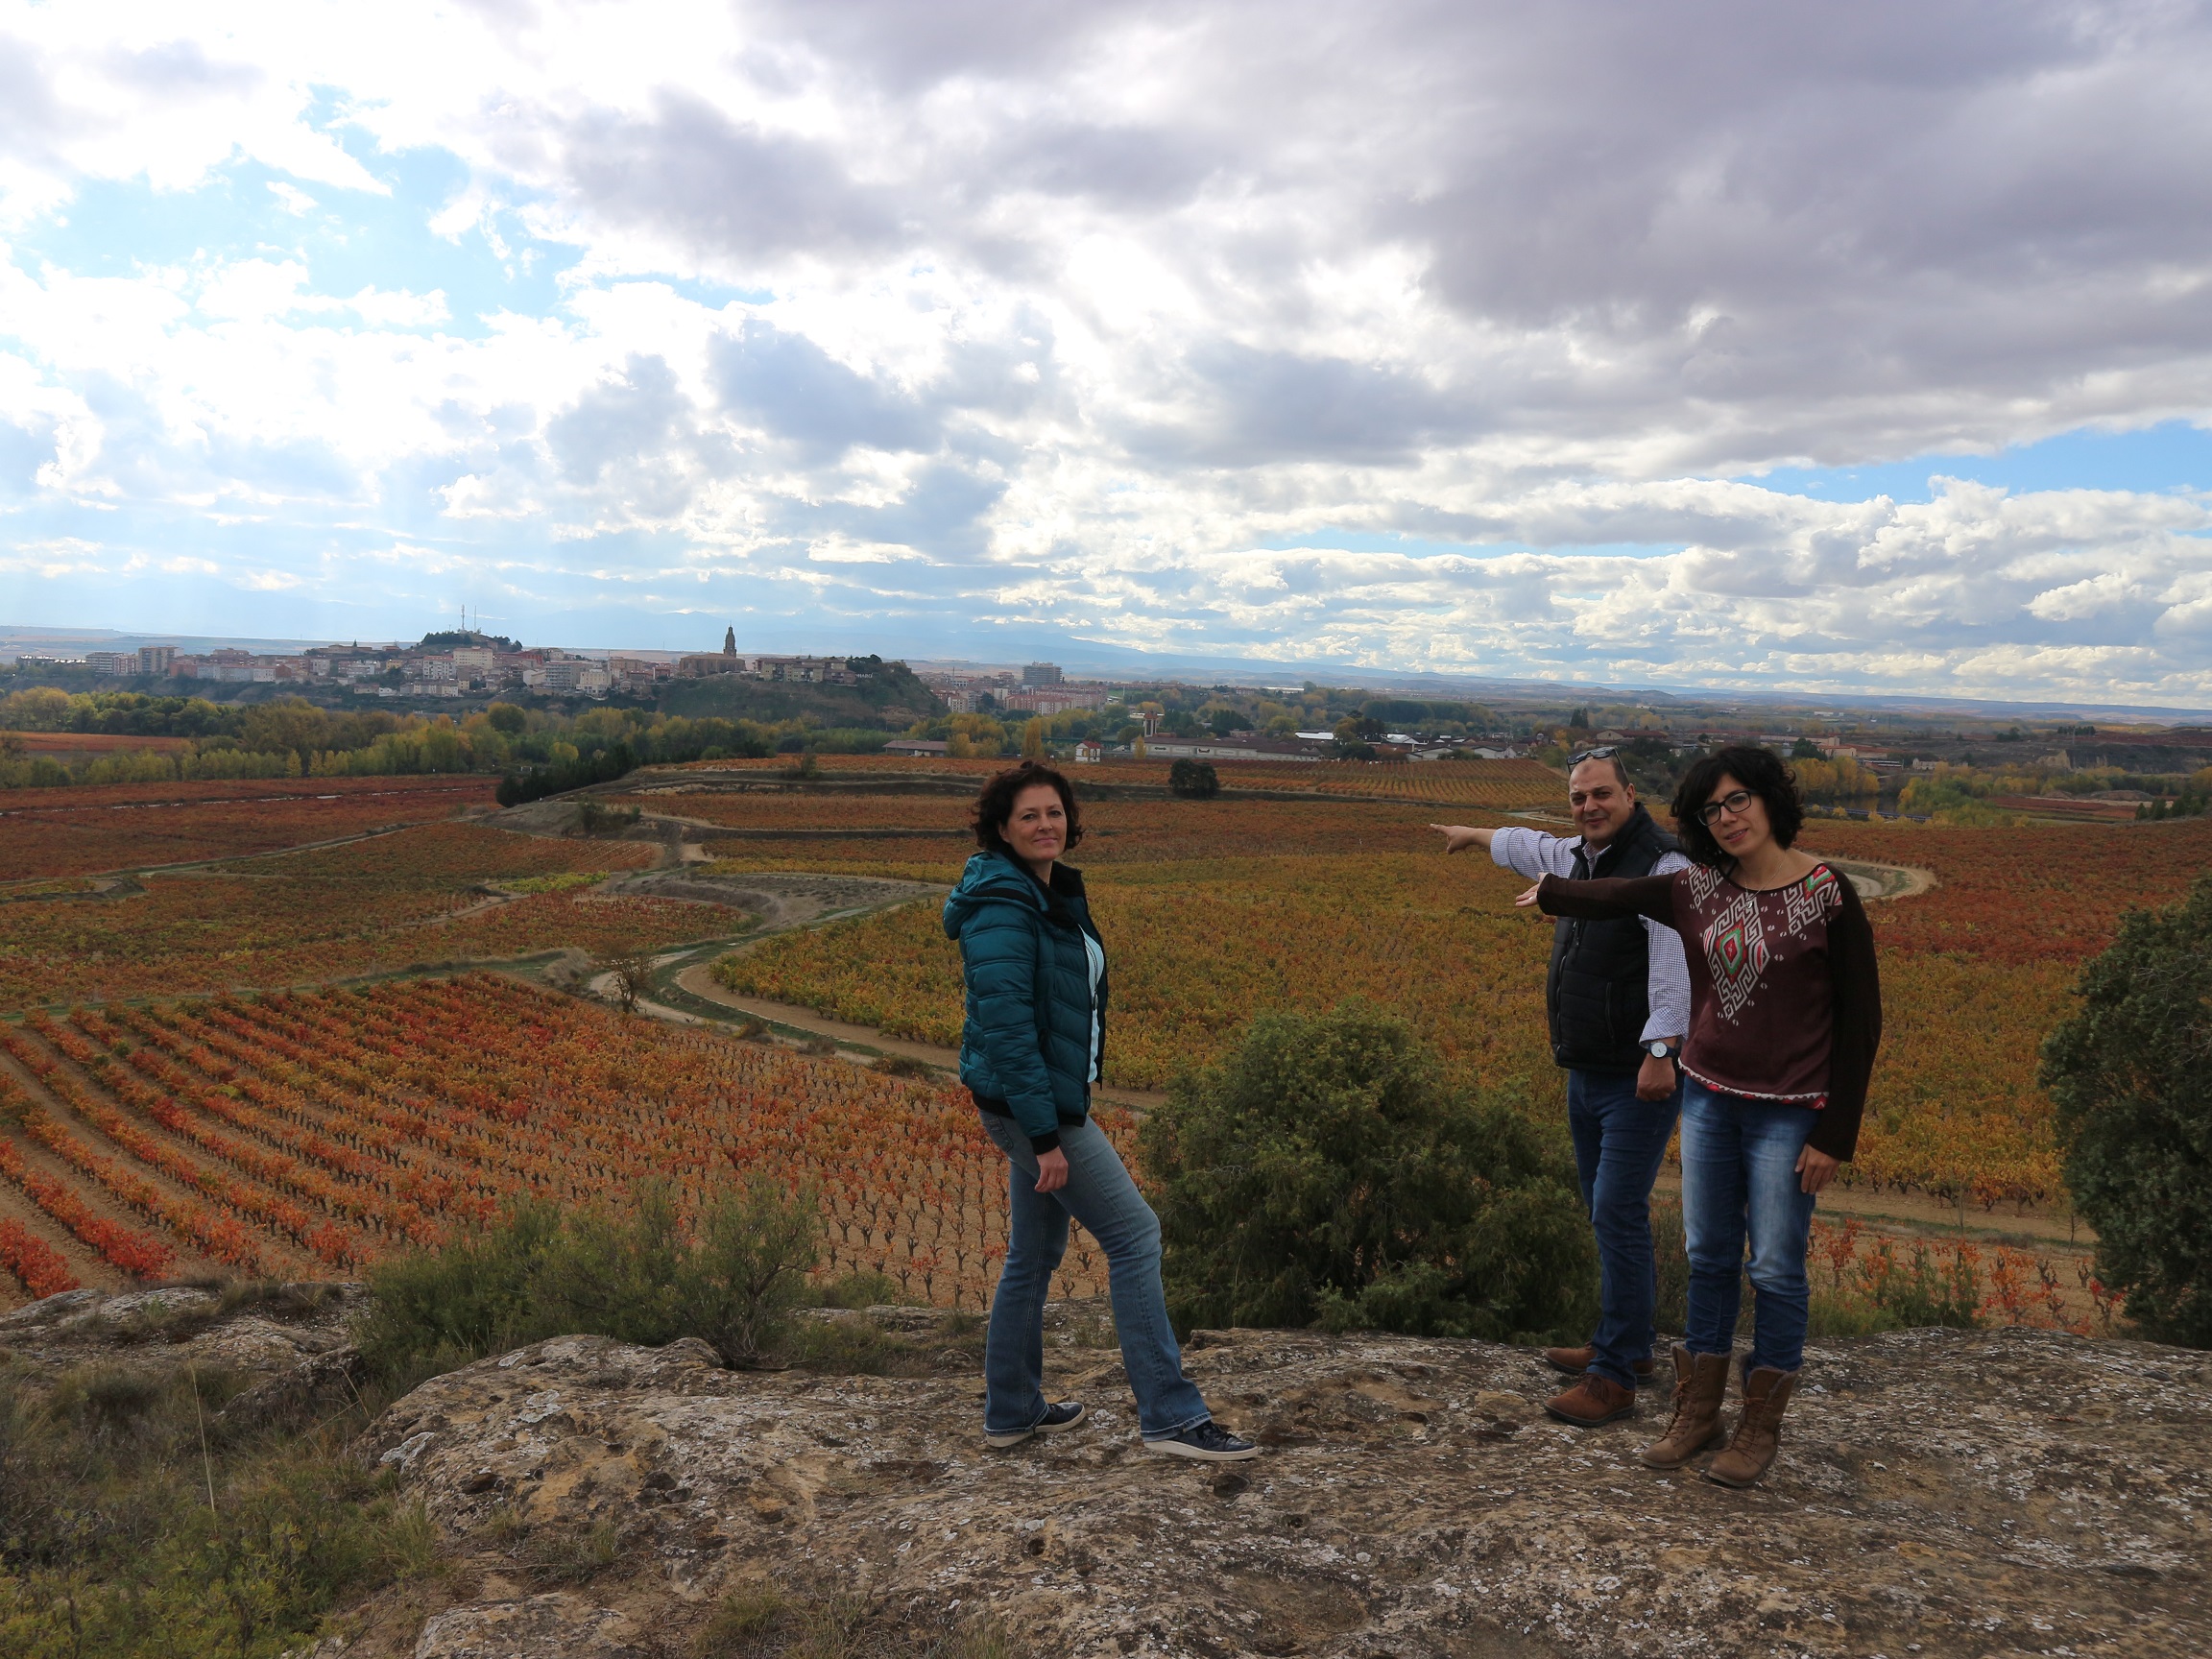 La ILP en Defensa del Paisaje Vitícola ya puede ser debatida en el Parlamento de La Rioja